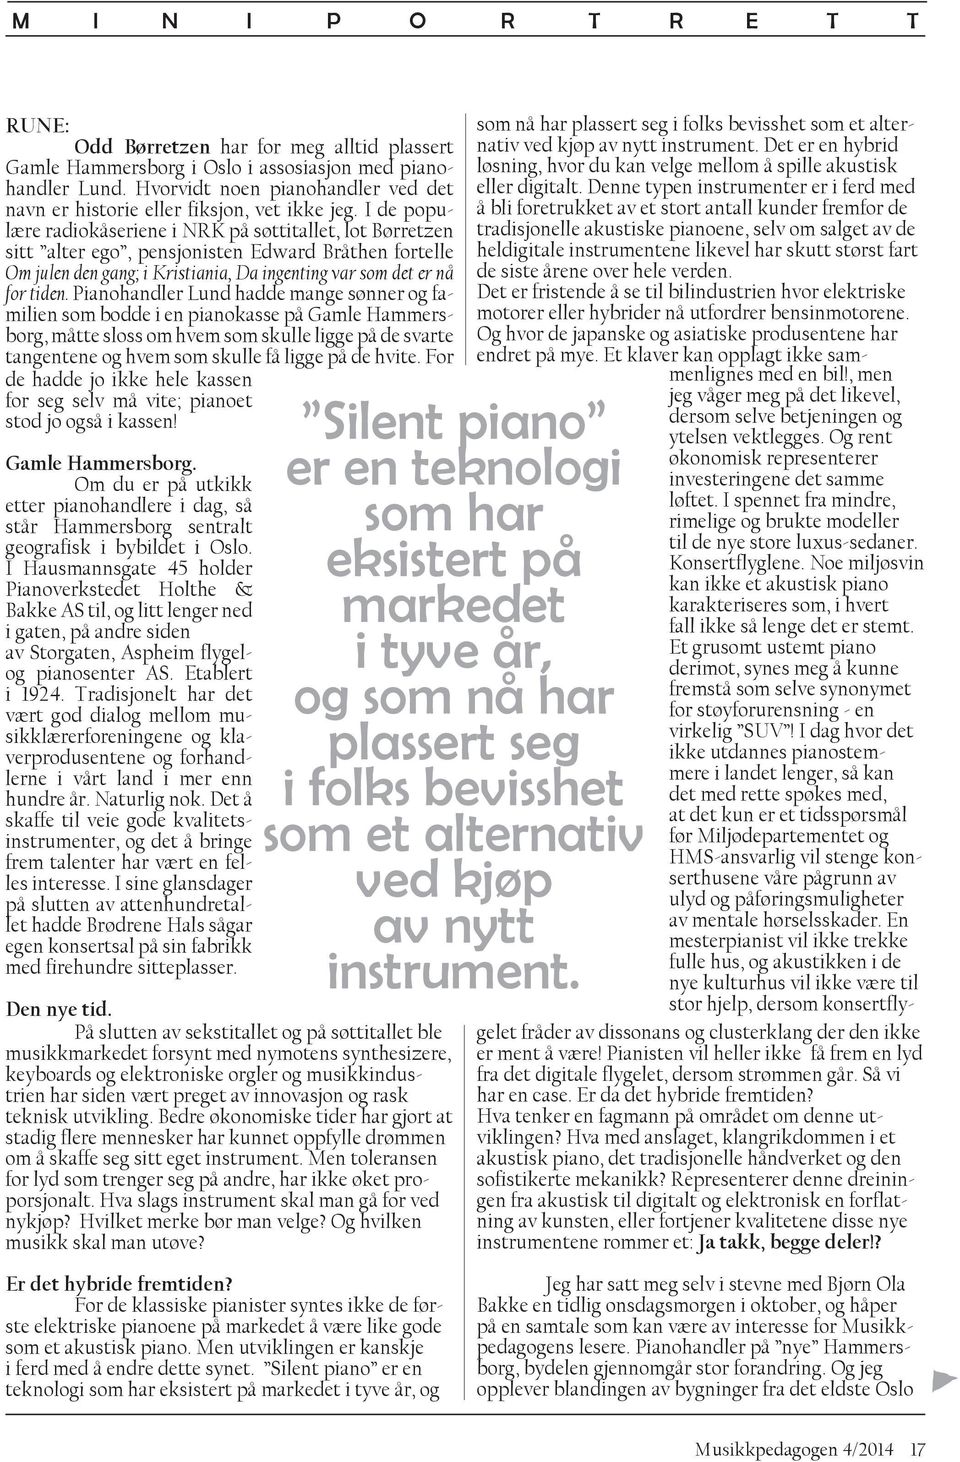 I de populære radiokåseriene i NRK på søttitallet, lot Børretzen sitt alter ego, pensjonisten Edward Bråthen fortelle Om julen den gang; i Kristiania, Da ingenting var som det er nå for tiden.